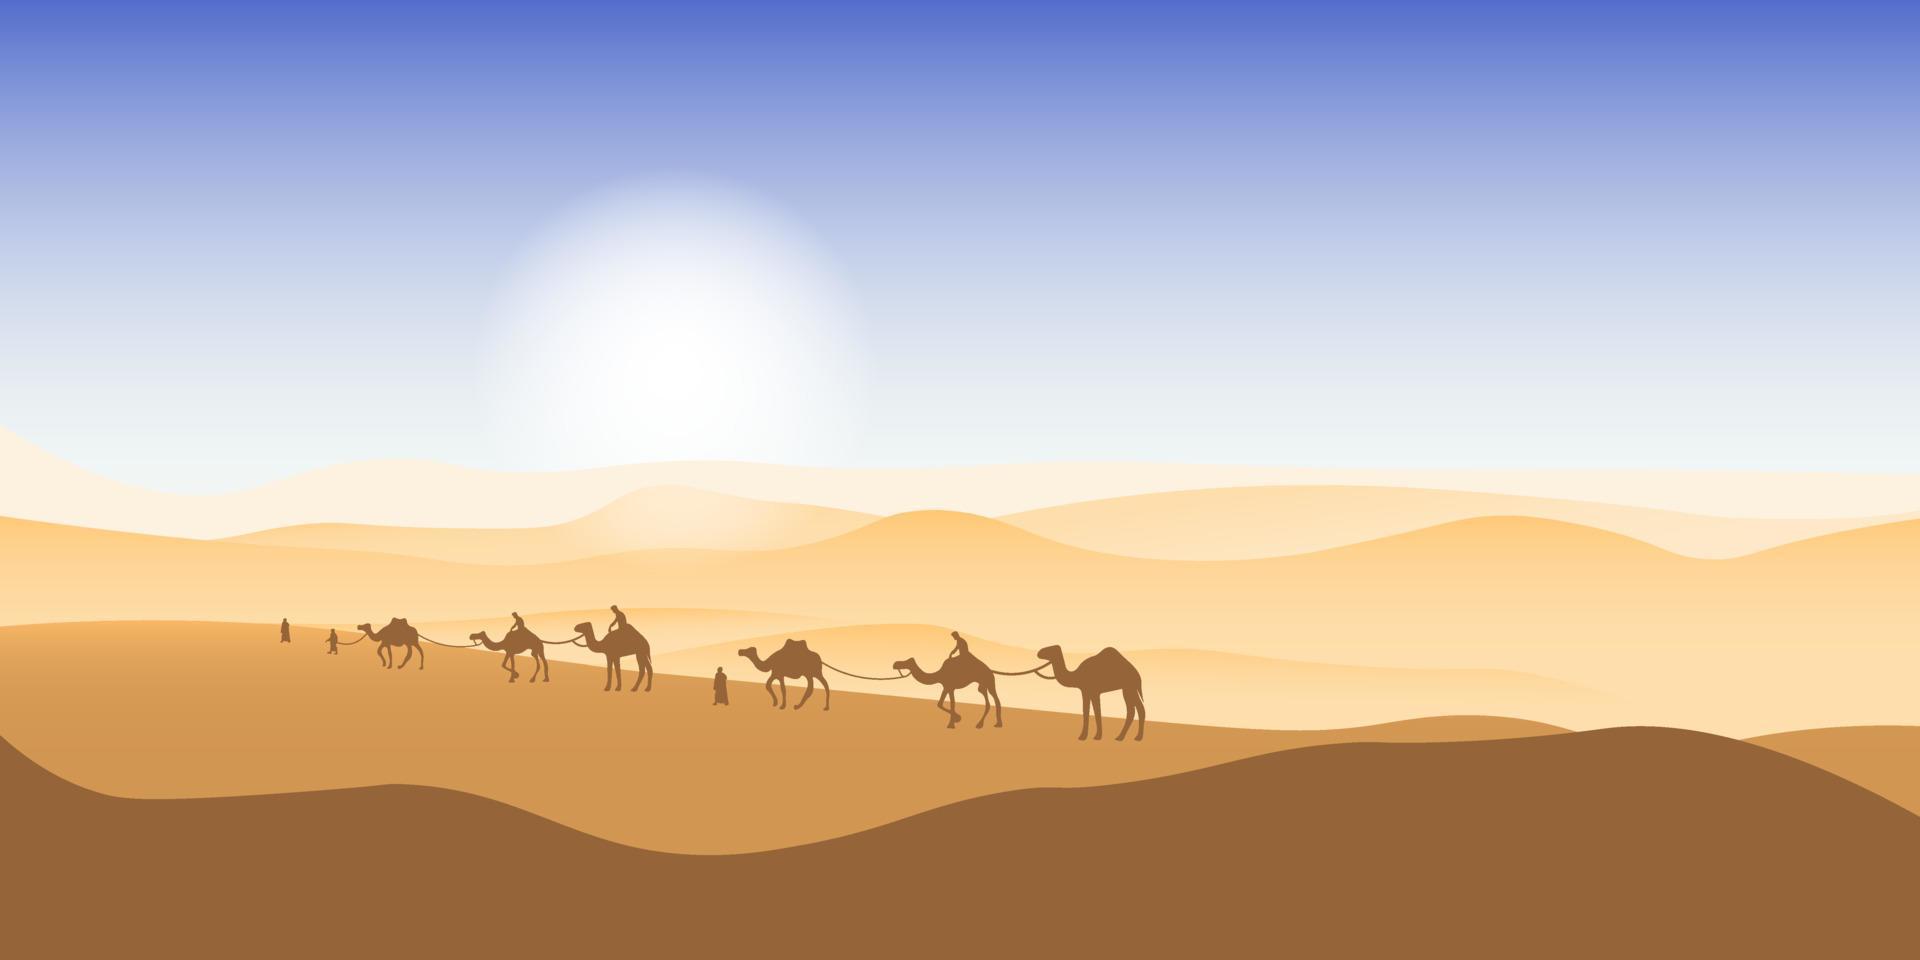 kamel husvagn godkänd genom de öken. afrikansk landskap. du kan använda sig av för islamic bakgrund, baner, affisch, hemsida, social och skriva ut media. vektor illustration.